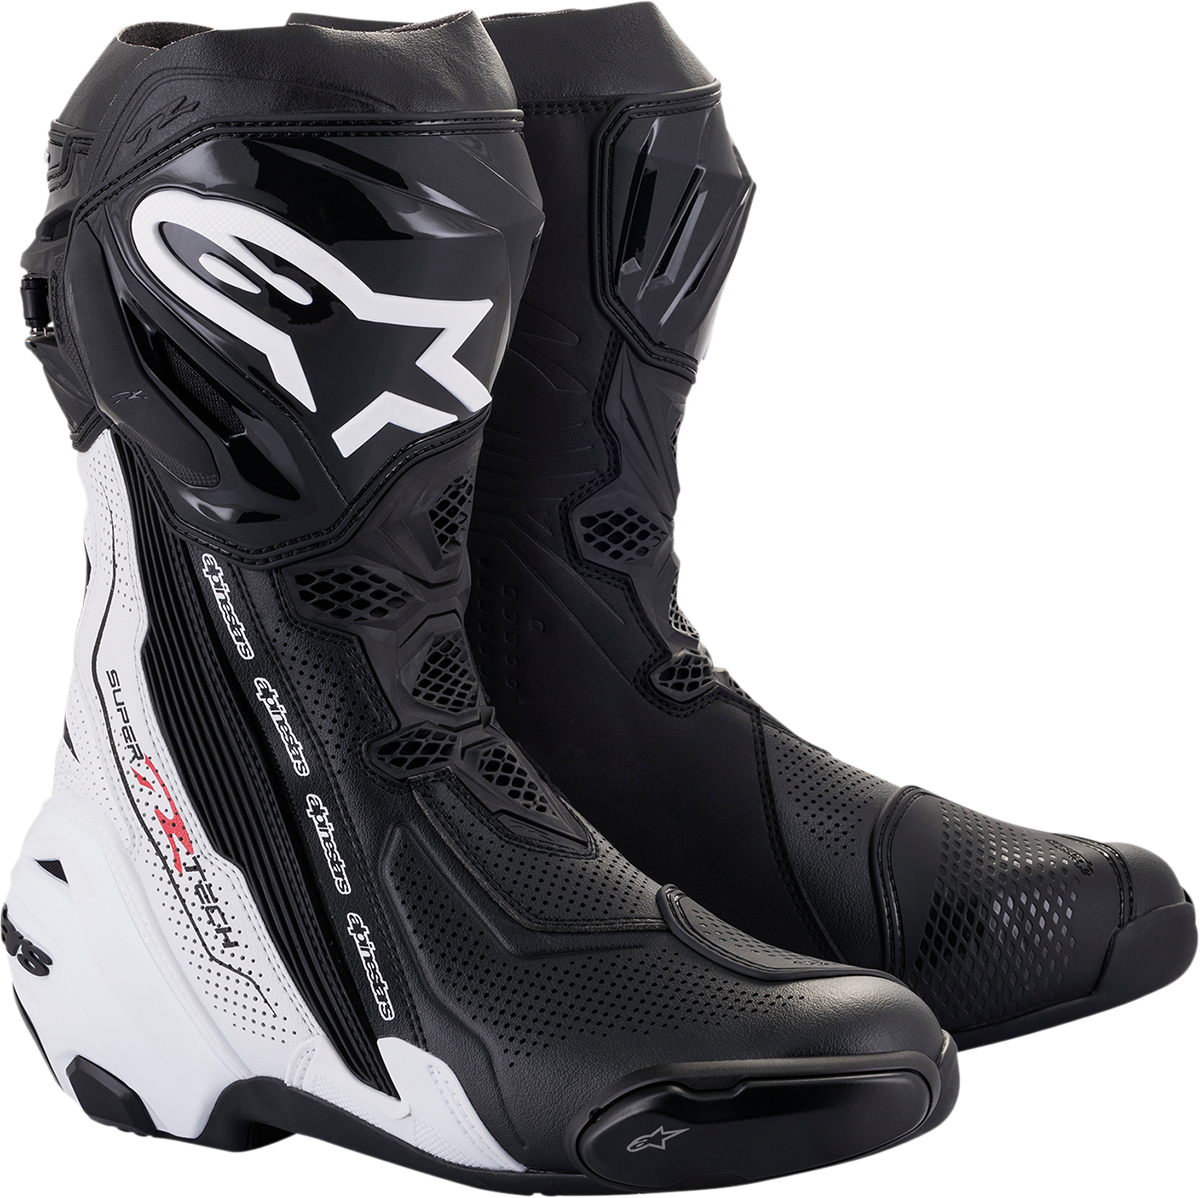 ALPINESTARS Supertech V Boots - Black/White - US 12.5 / EU 48 2220121-12-48